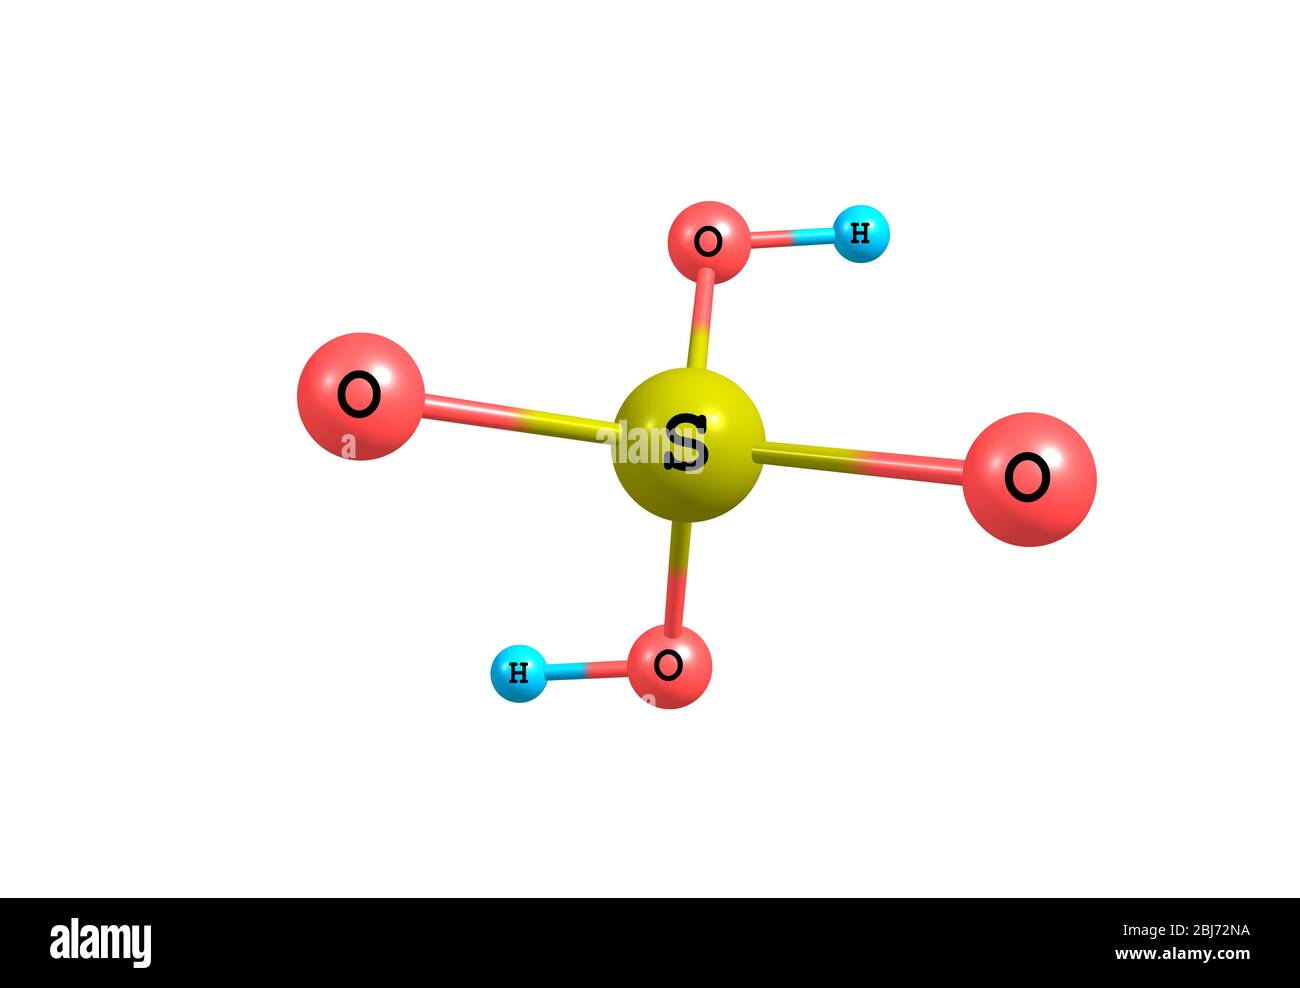 L'acide sulfurique (acide sulfurique) est un acide minéral fort très corrosif dont la formule moléculaire est H2SO4. C'est un piquant-étheal, incolore à gigole Banque D'Images